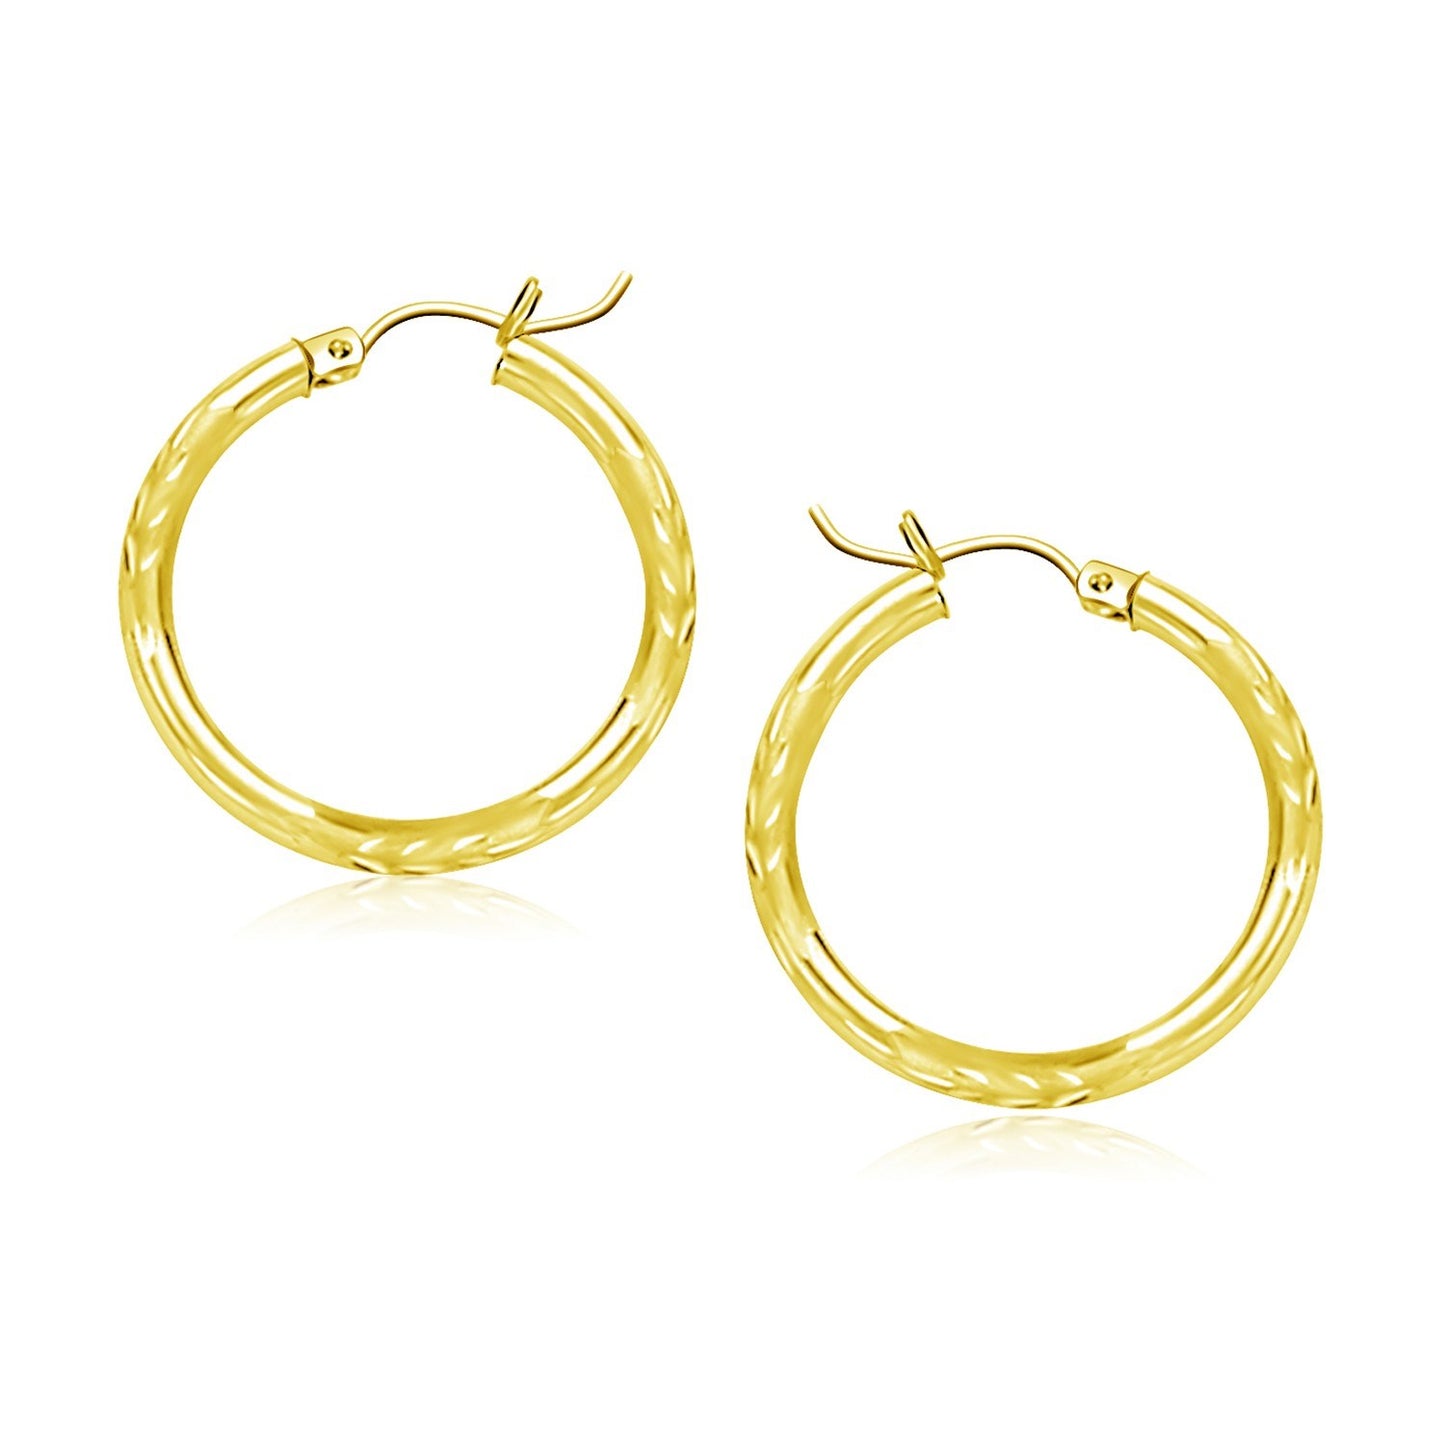 10k Yellow Gold Diamond Cut Hoop Earrings (20mm)